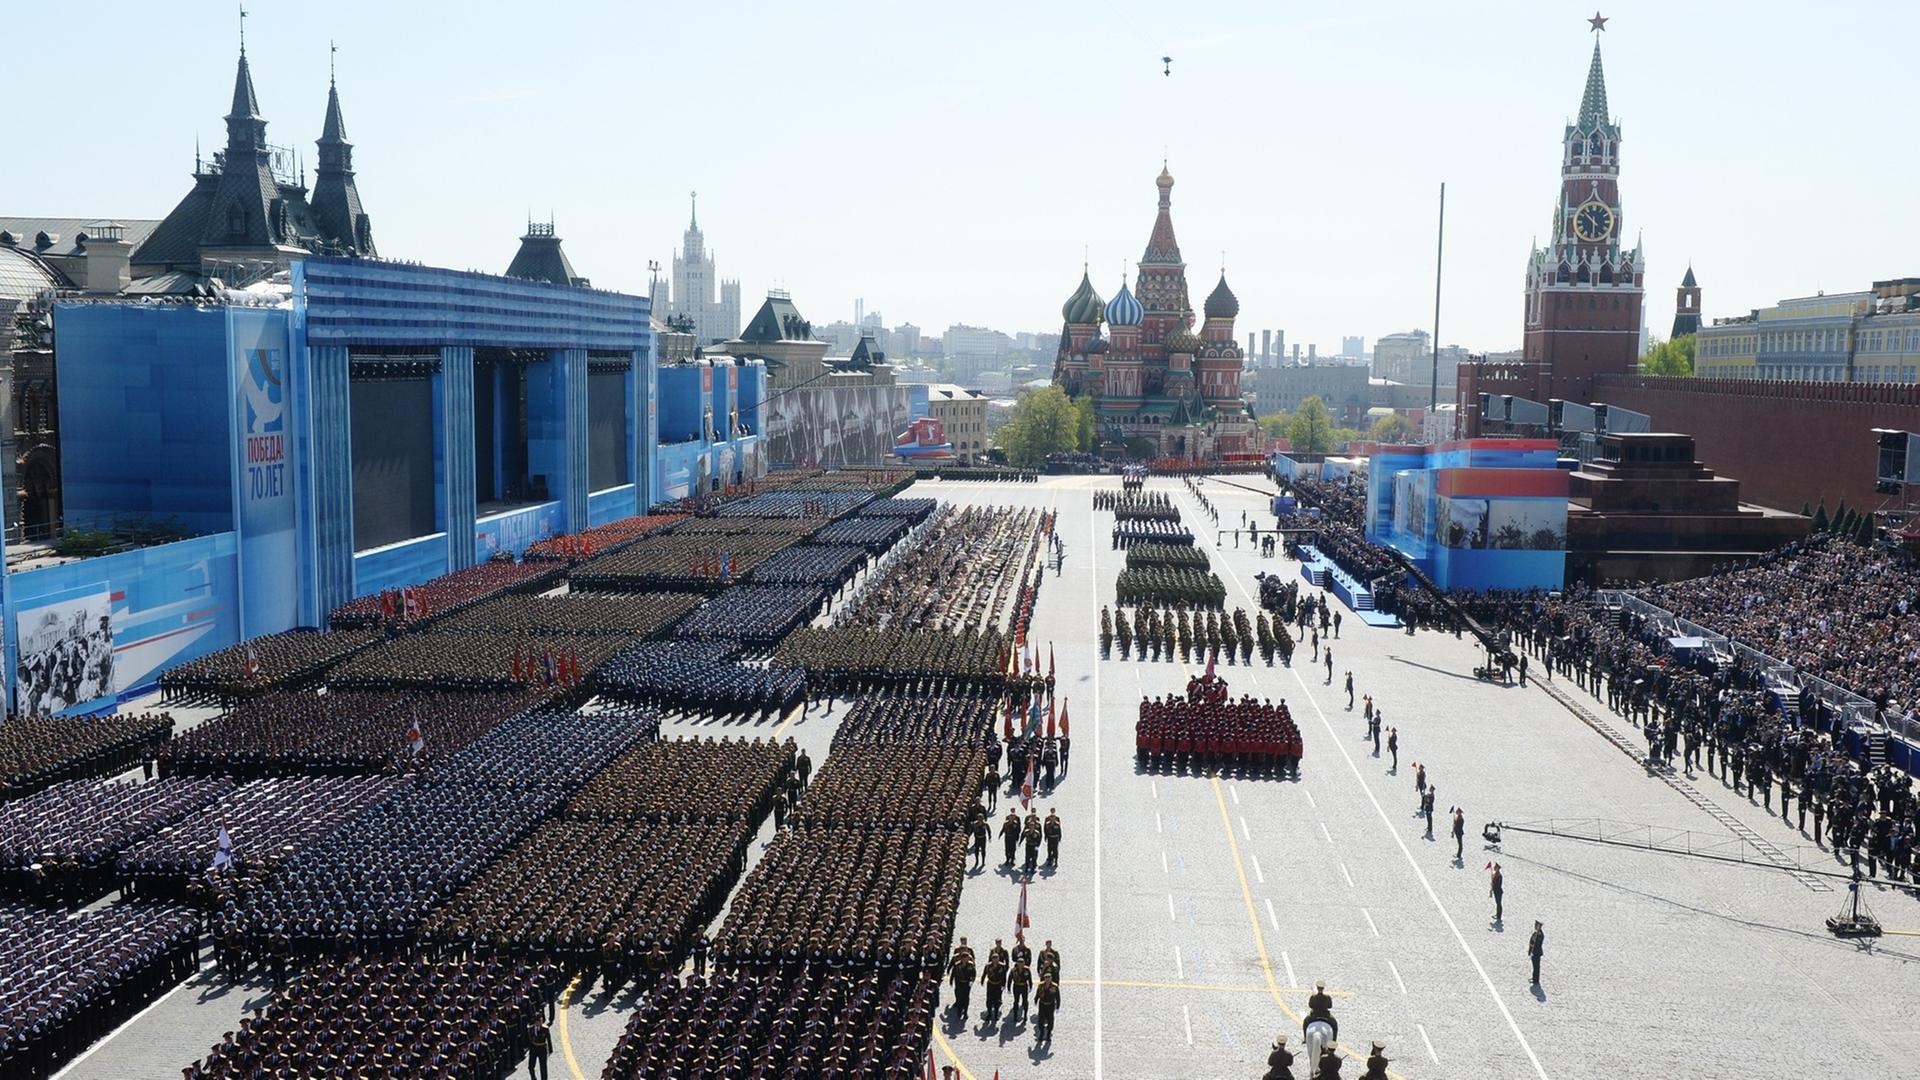 Militärparade in Moskau zum Gedenken an das Ende des Zweiten Weltkriegs, 9. Mai 2015, Blick von oben auf einen großen Platz, auf dem Soldatenformationen marschieren, im Hintergrund Skyline von Moskau.